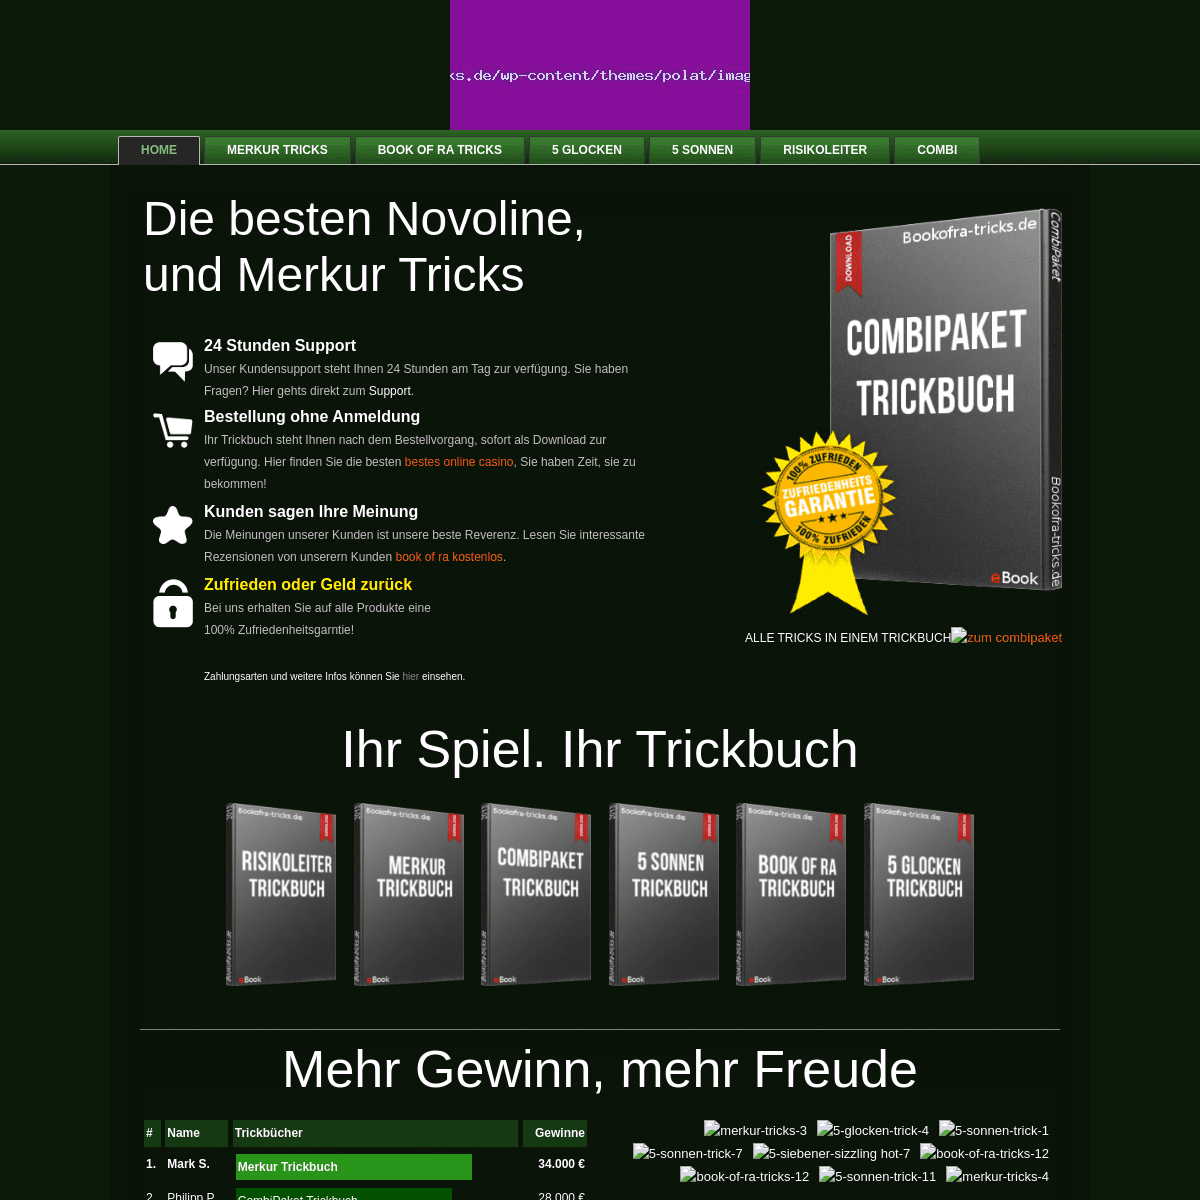 A complete backup of https://bookofra-tricks.de